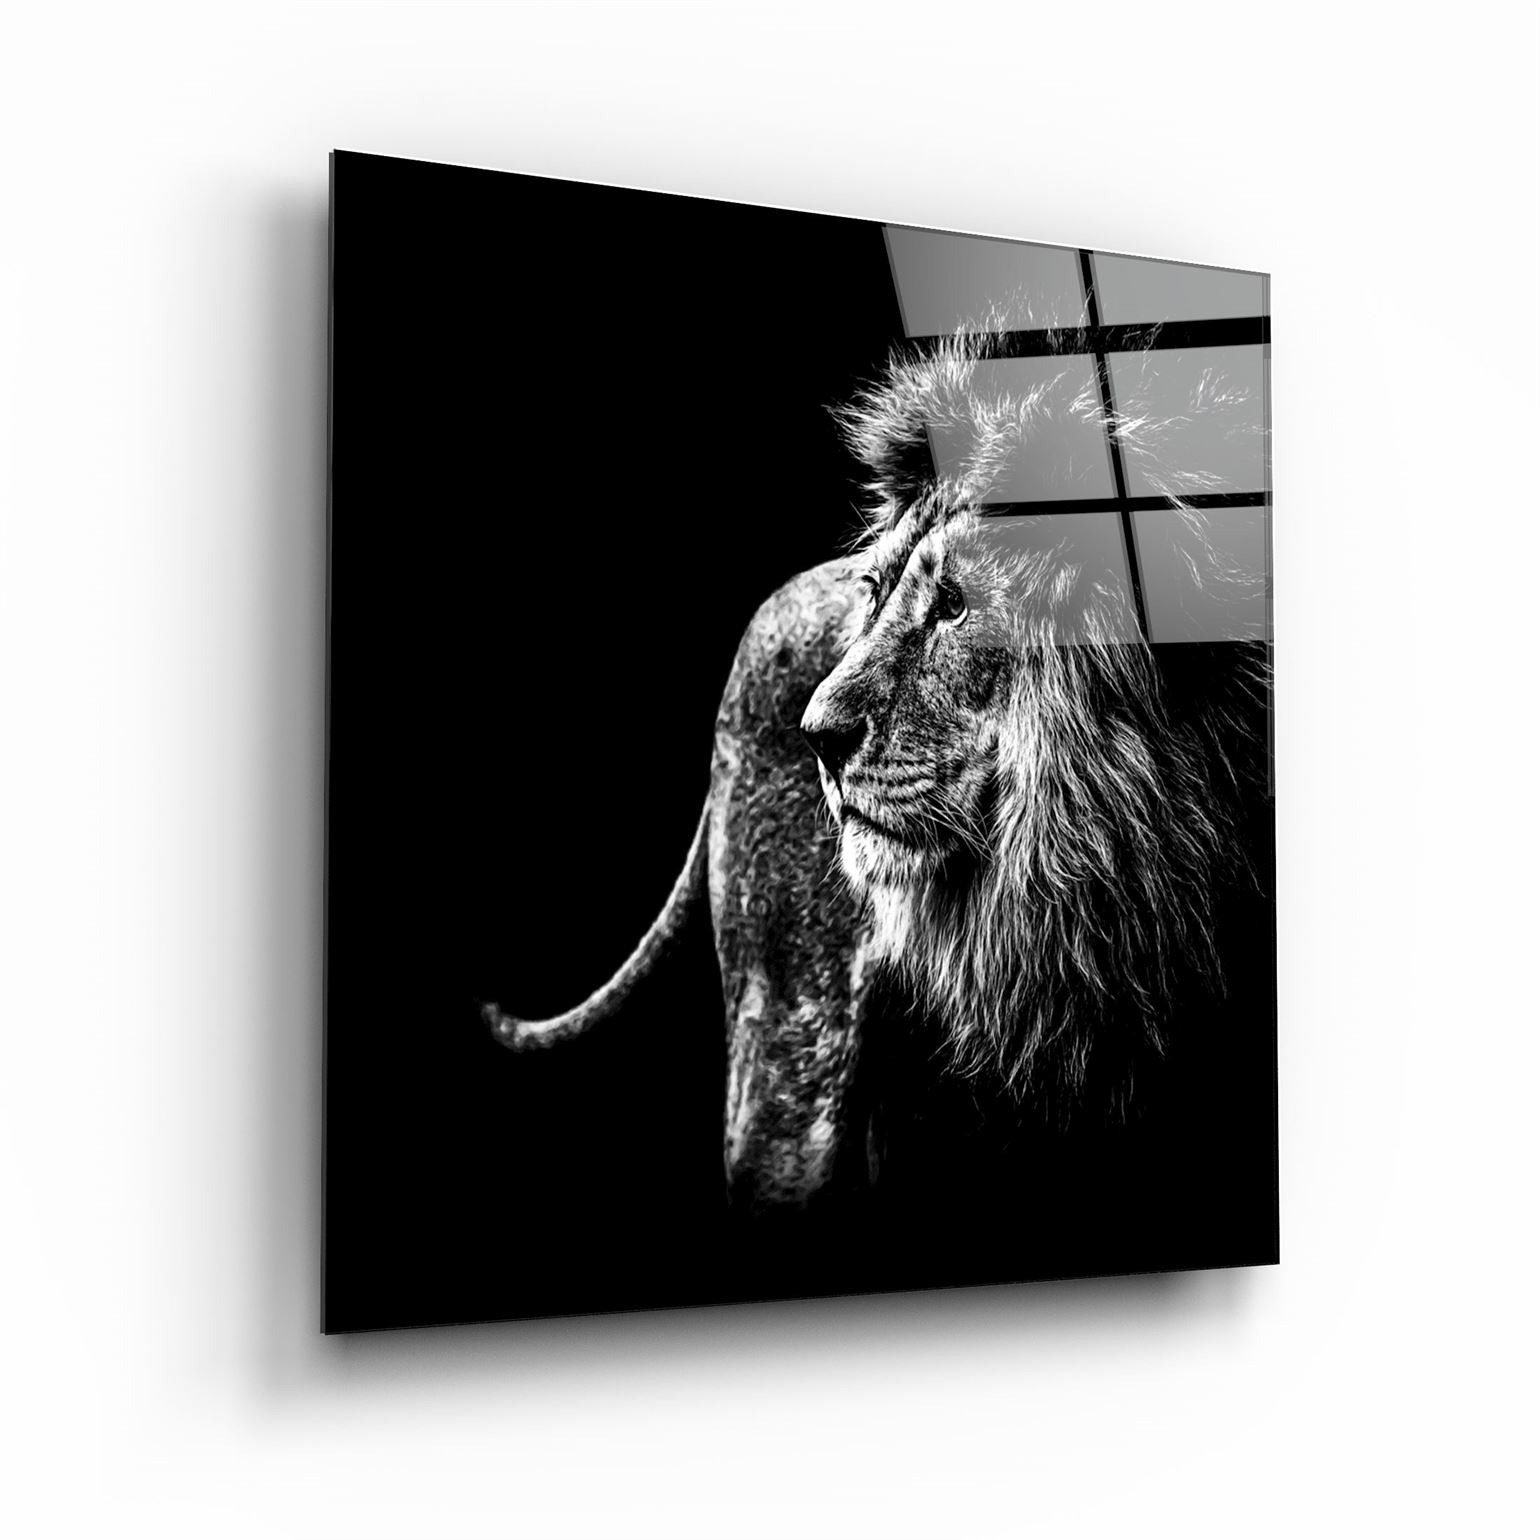 ・"Lion"・Glass Wall Art